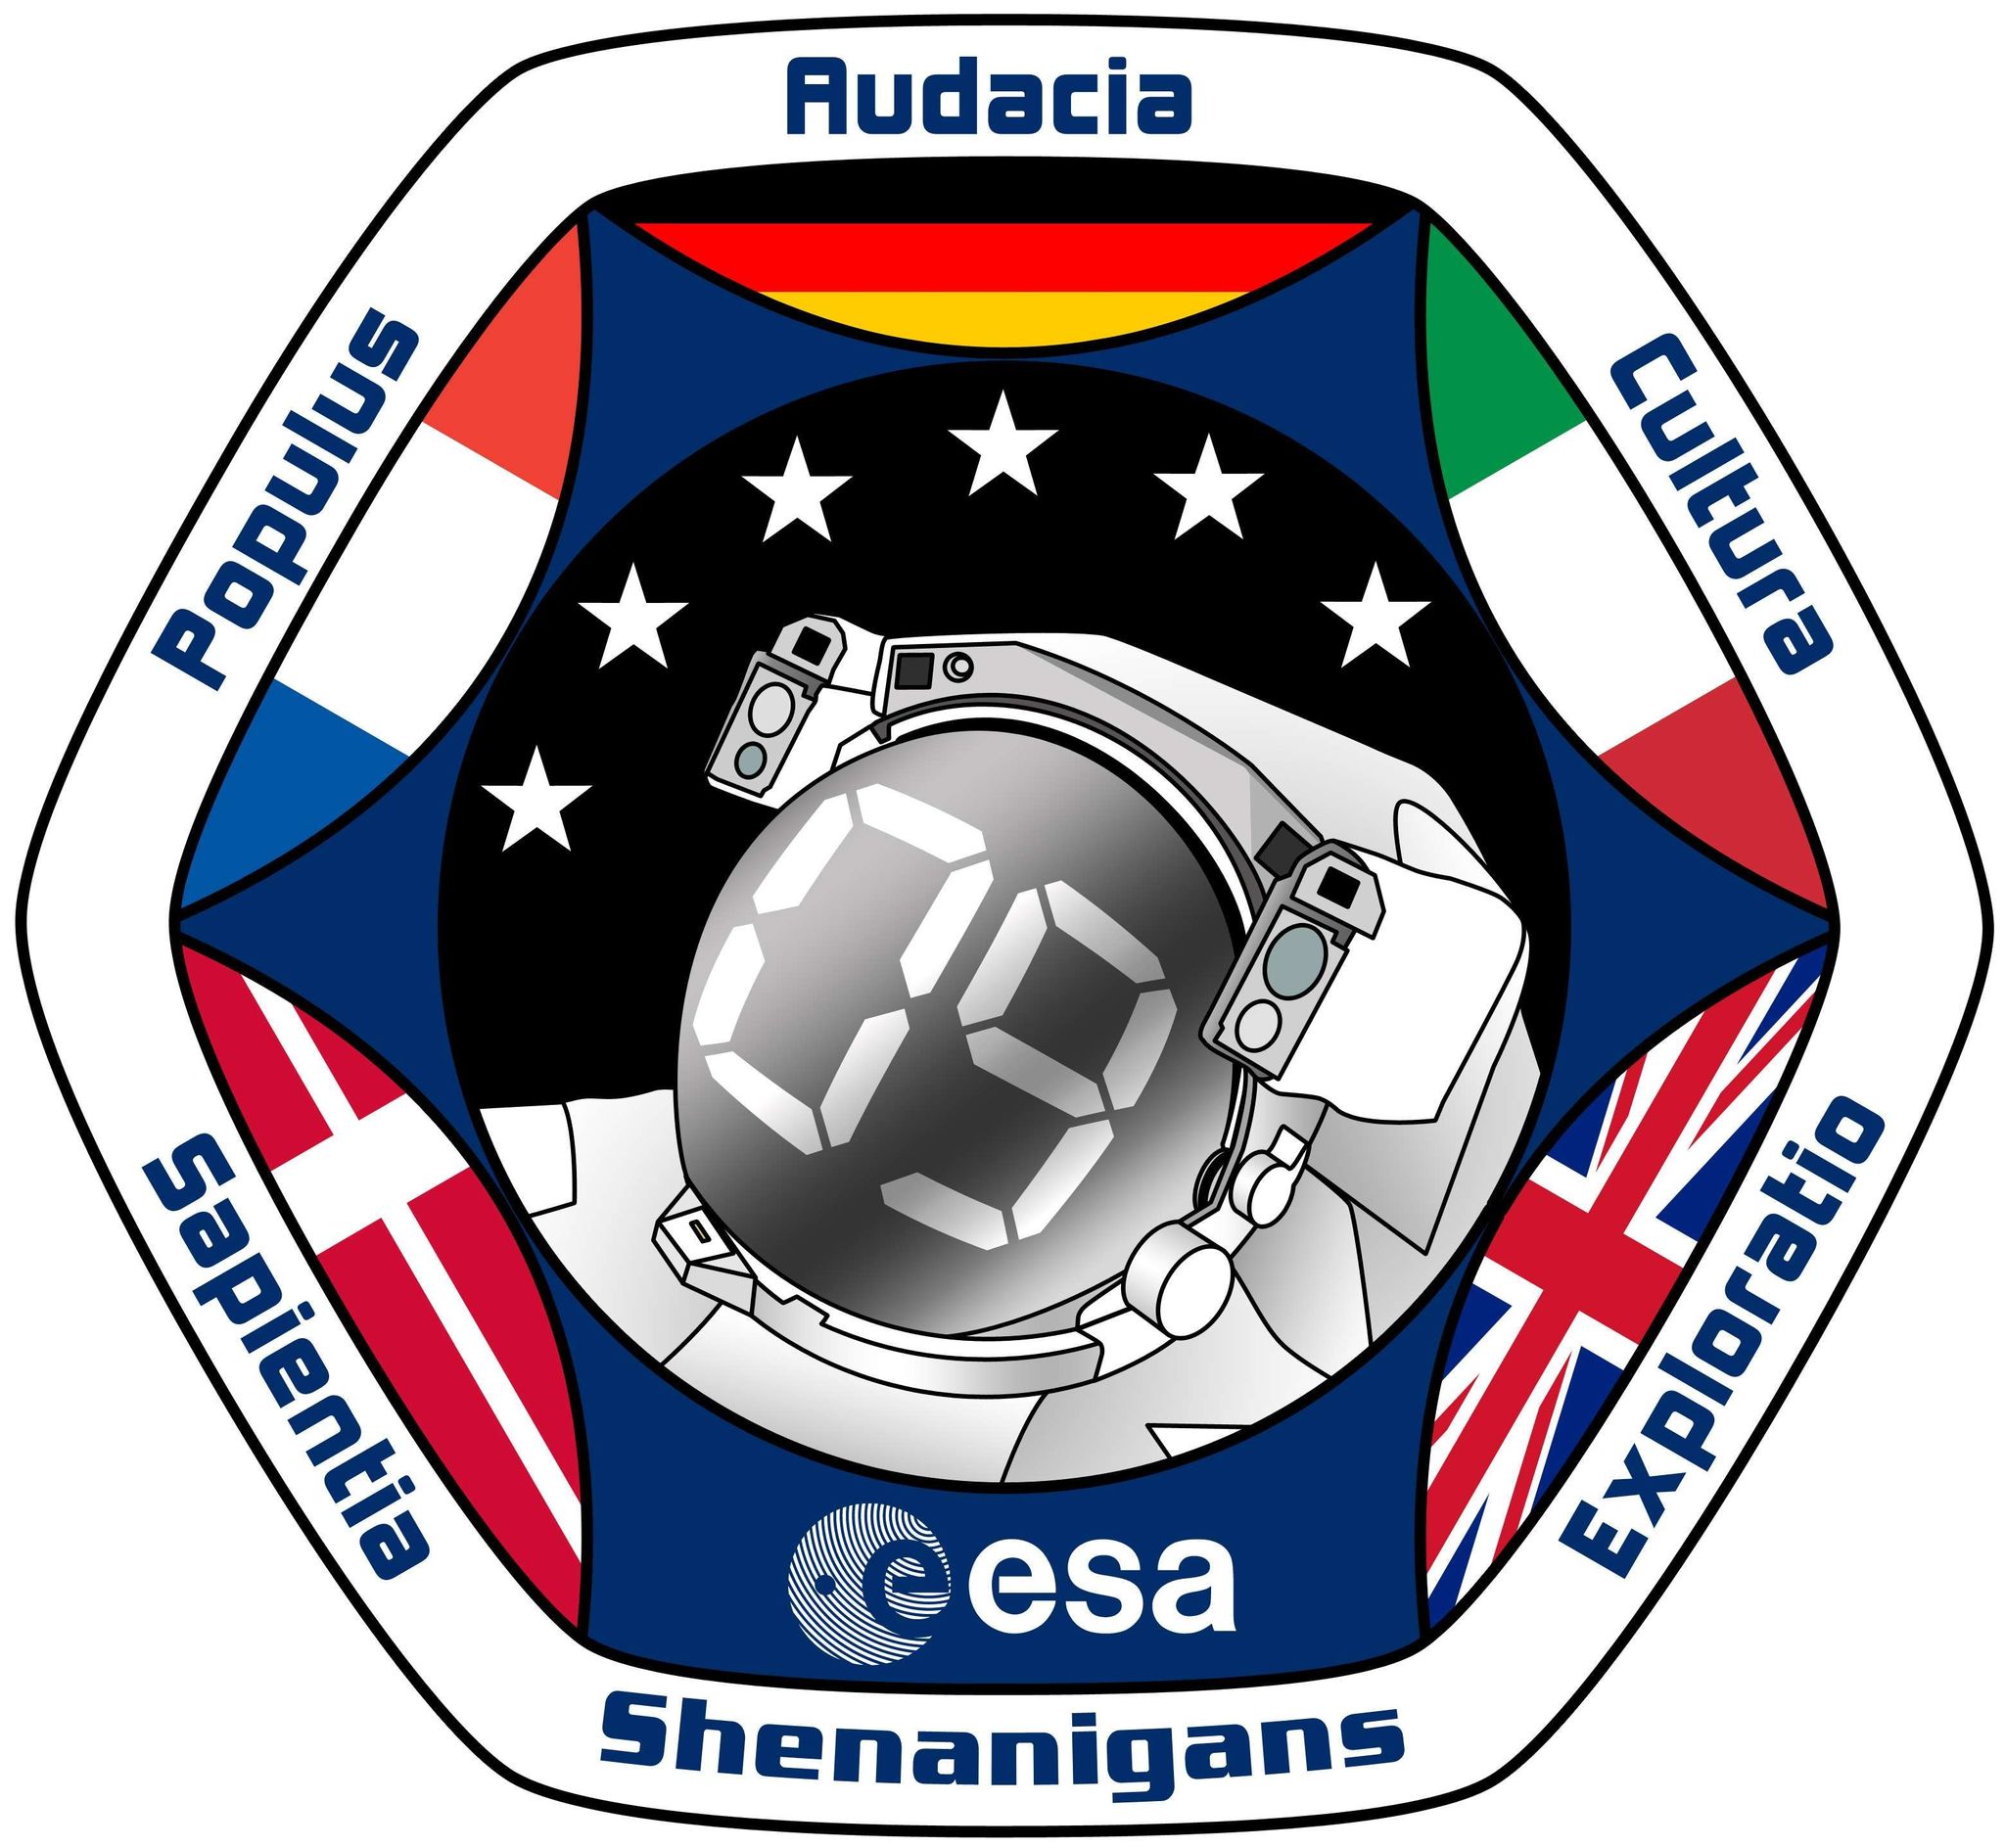 Patch de la promotion 2009 des astronautes de l'ESA (Credit : ESA)